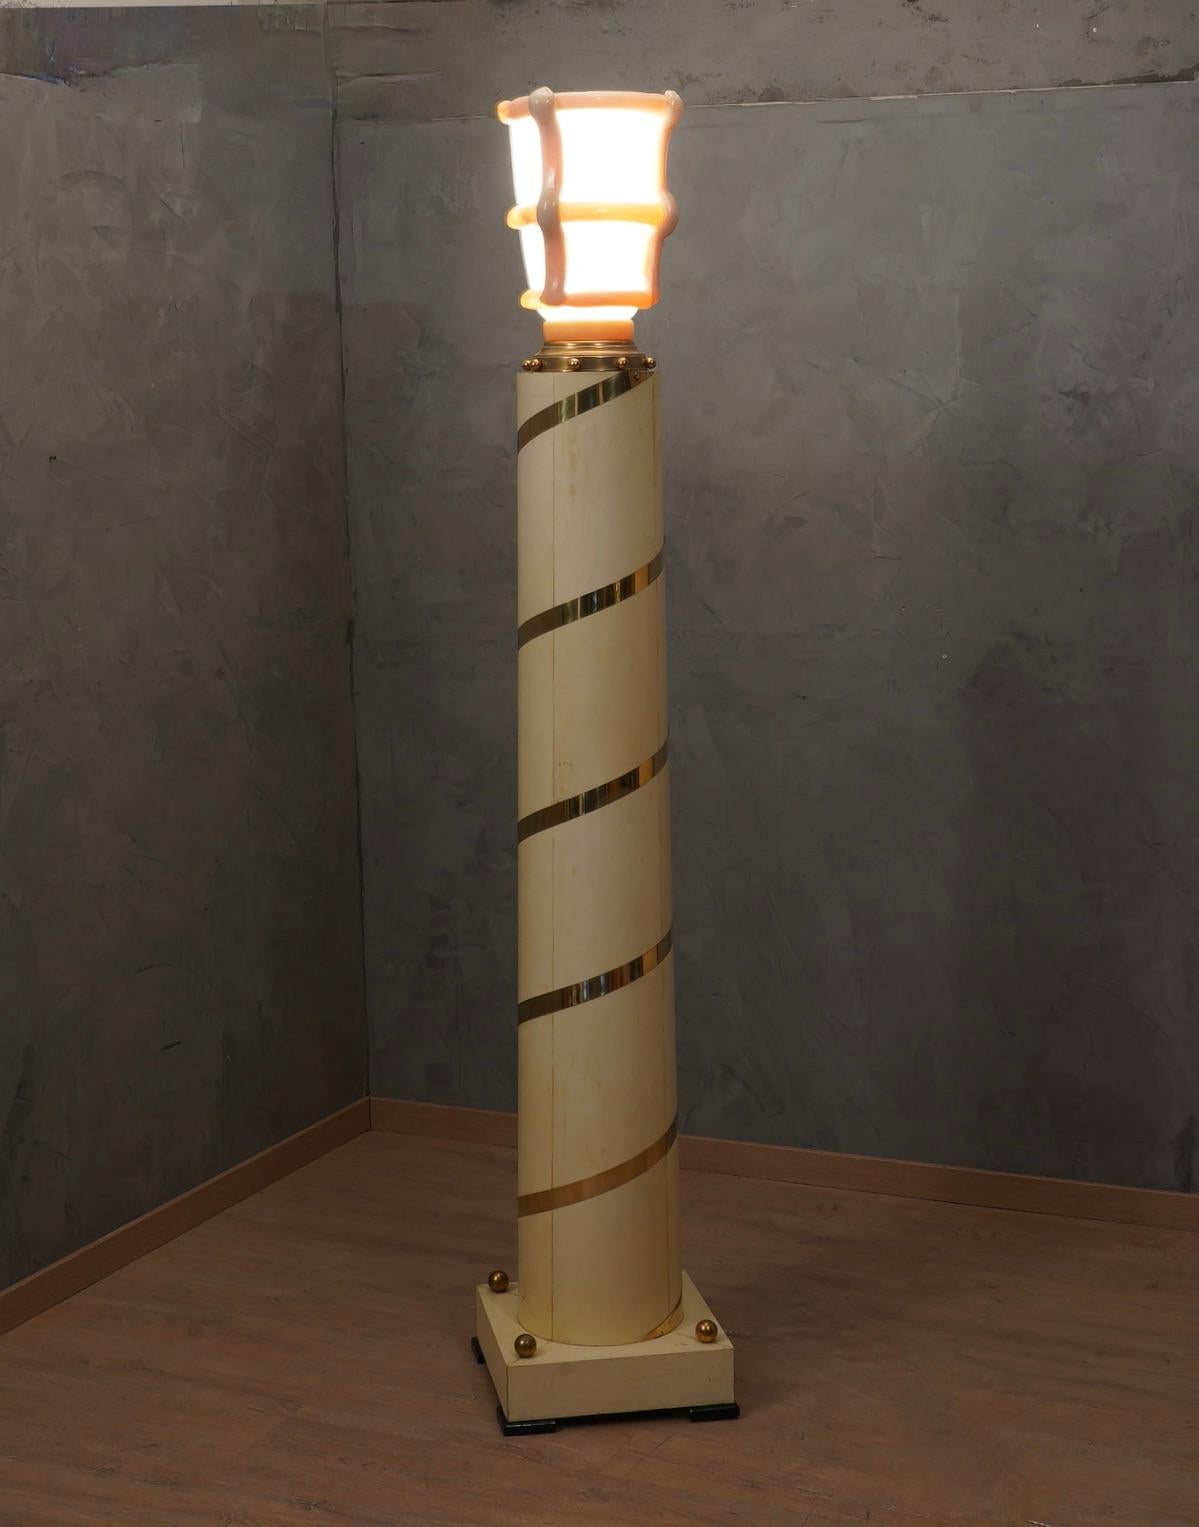 Splendide et royal lampadaire avec une combinaison parfaite de matériaux précieux tels que le verre de Murano, le laiton et la peau de chèvre.

La colonne, de structure cylindrique mais légèrement conique, est en bois et entièrement recouverte de